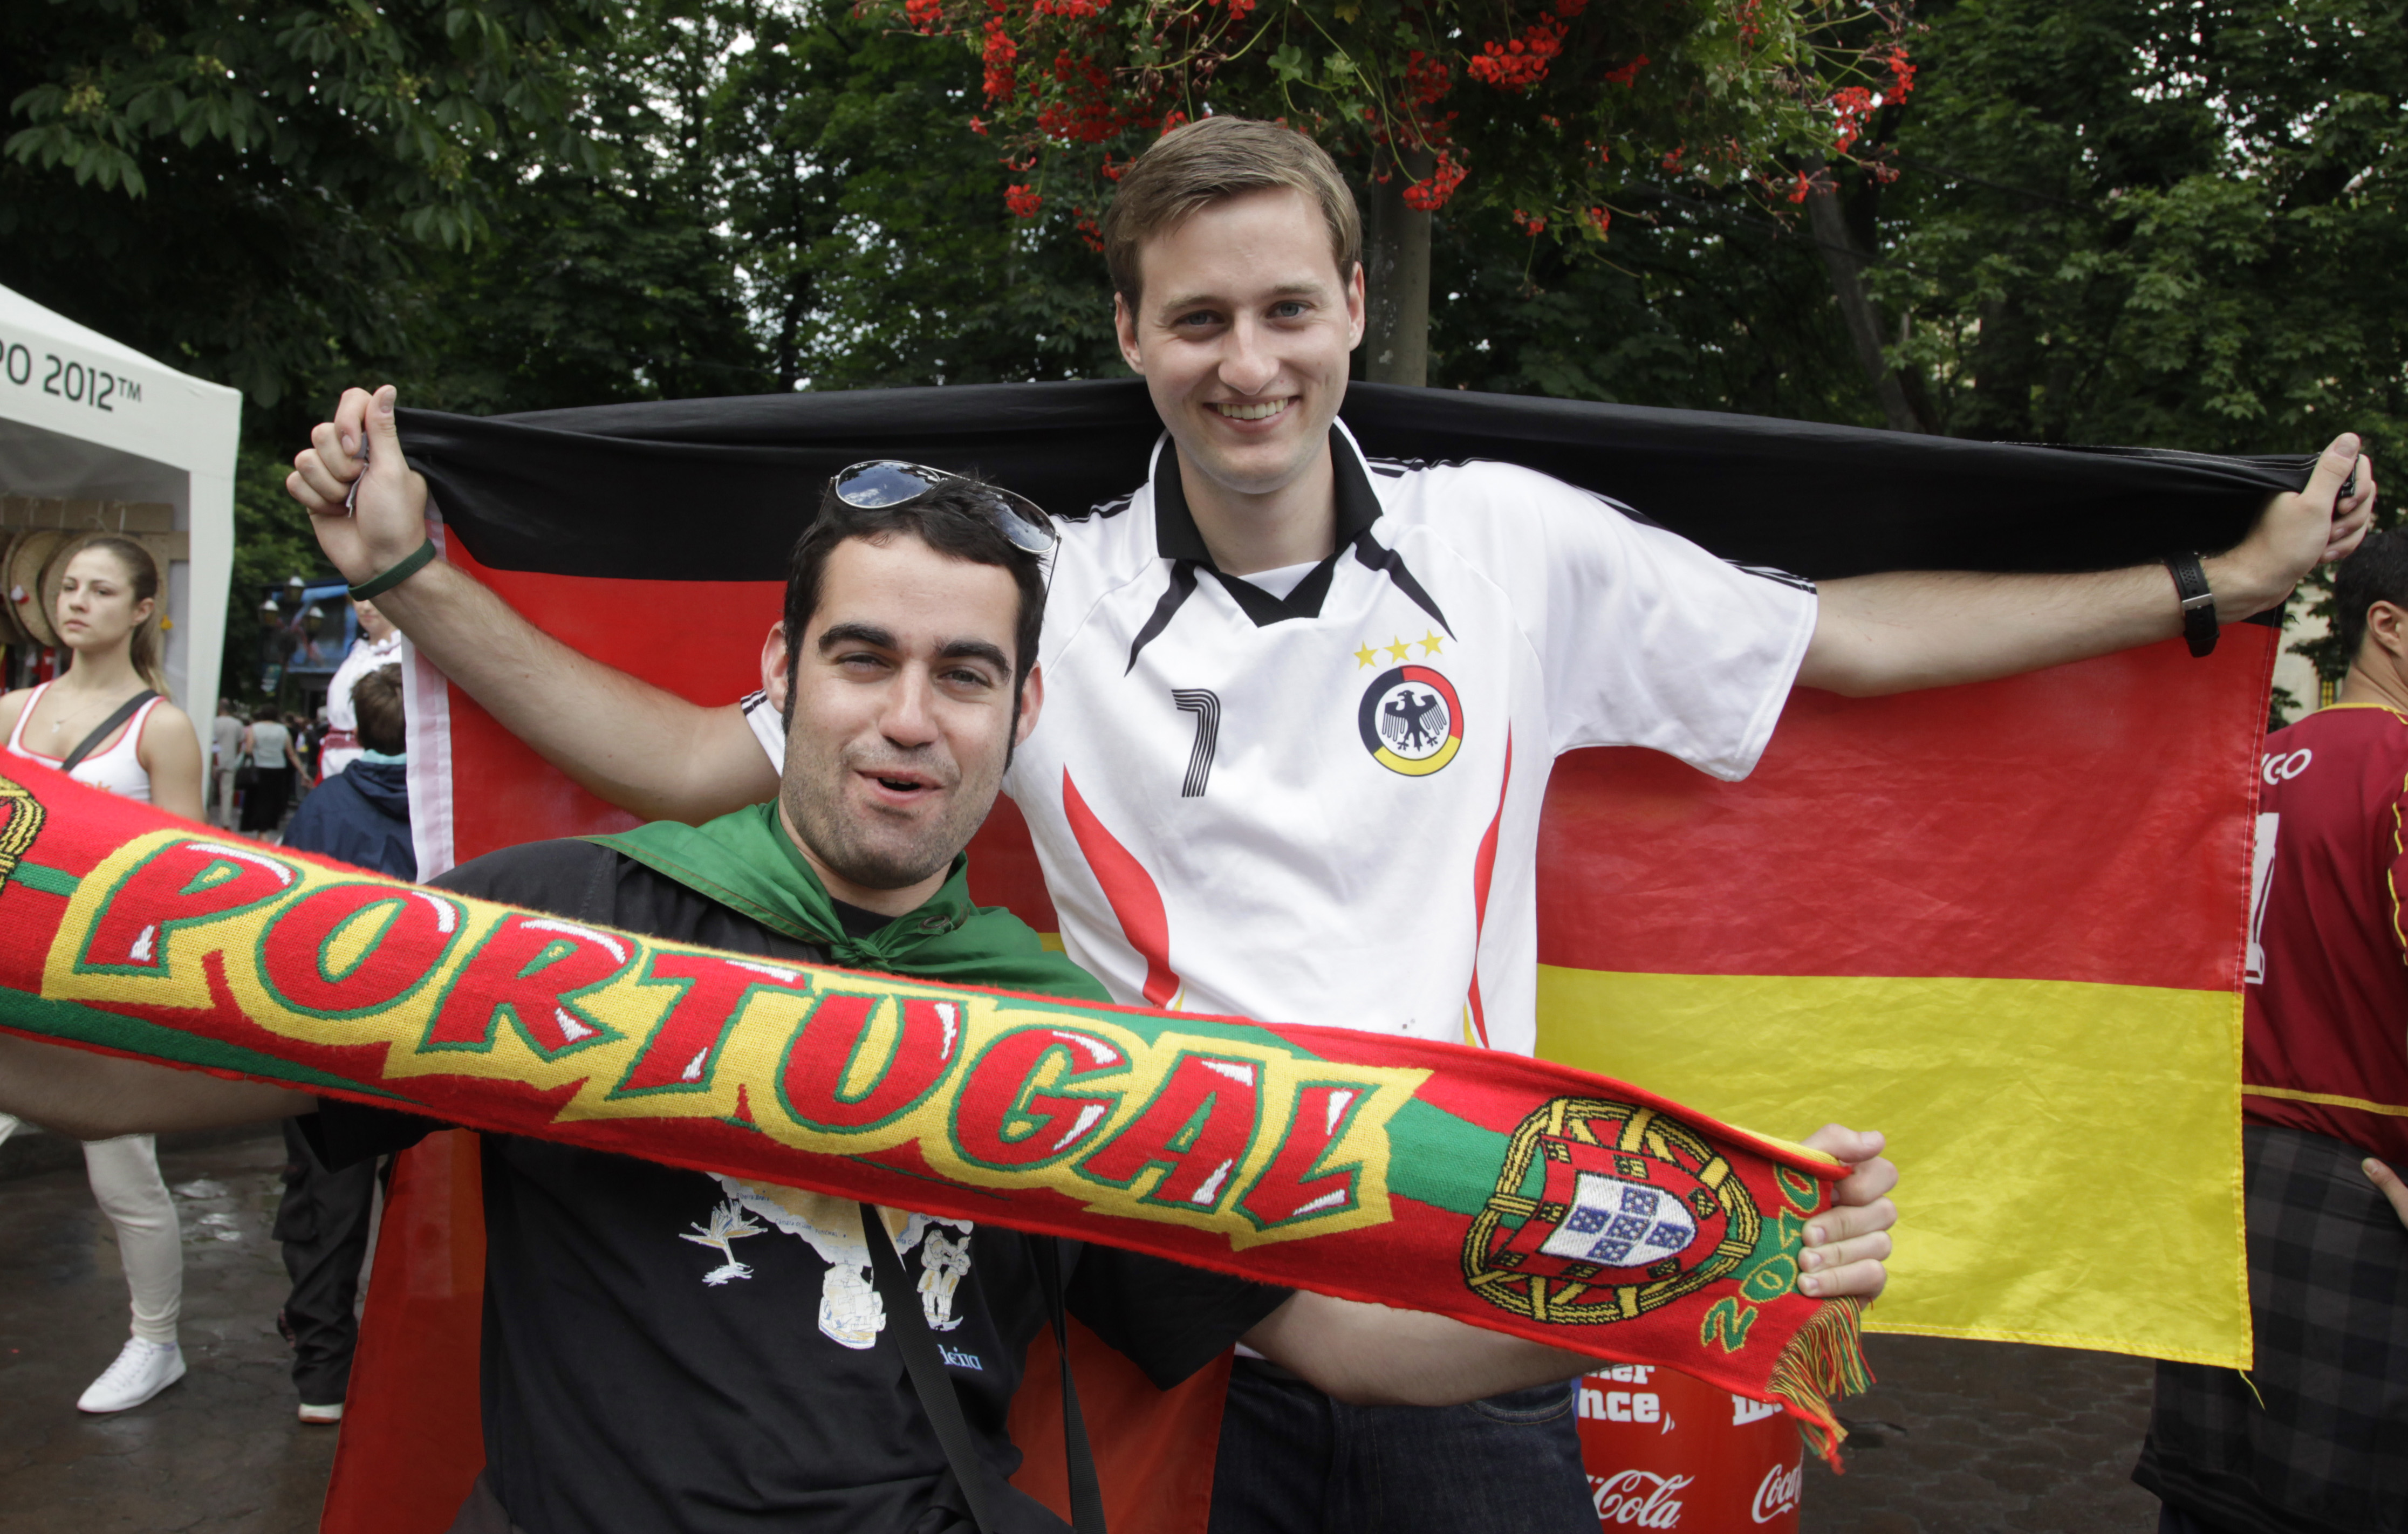 Fansen är laddade inför holmgången mellan Tyskland och Portugal.